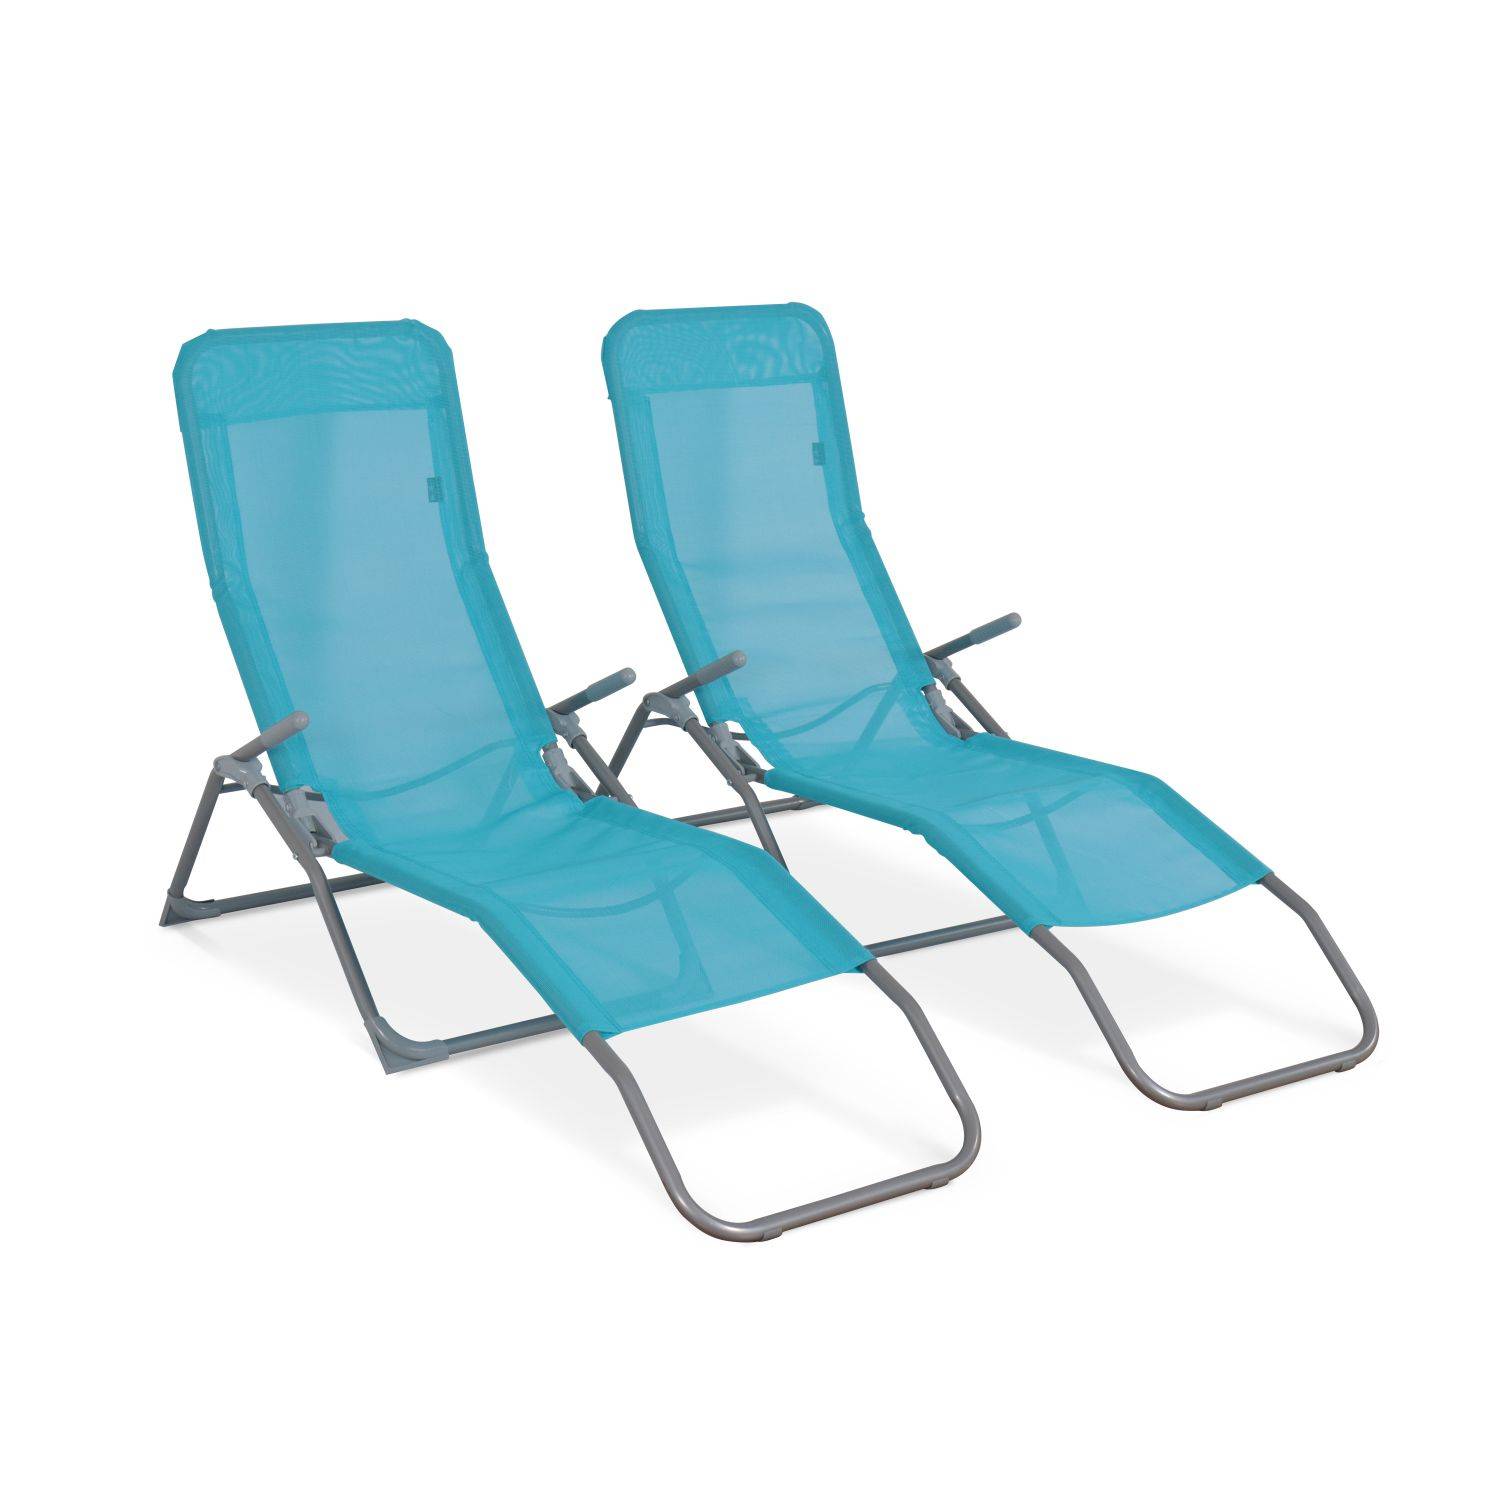 Set mit 2 klappbaren Sonnenliegen - Levito Türkis - Textilene-Liegestühle mit 2 Positionen, Liegestühle Photo2